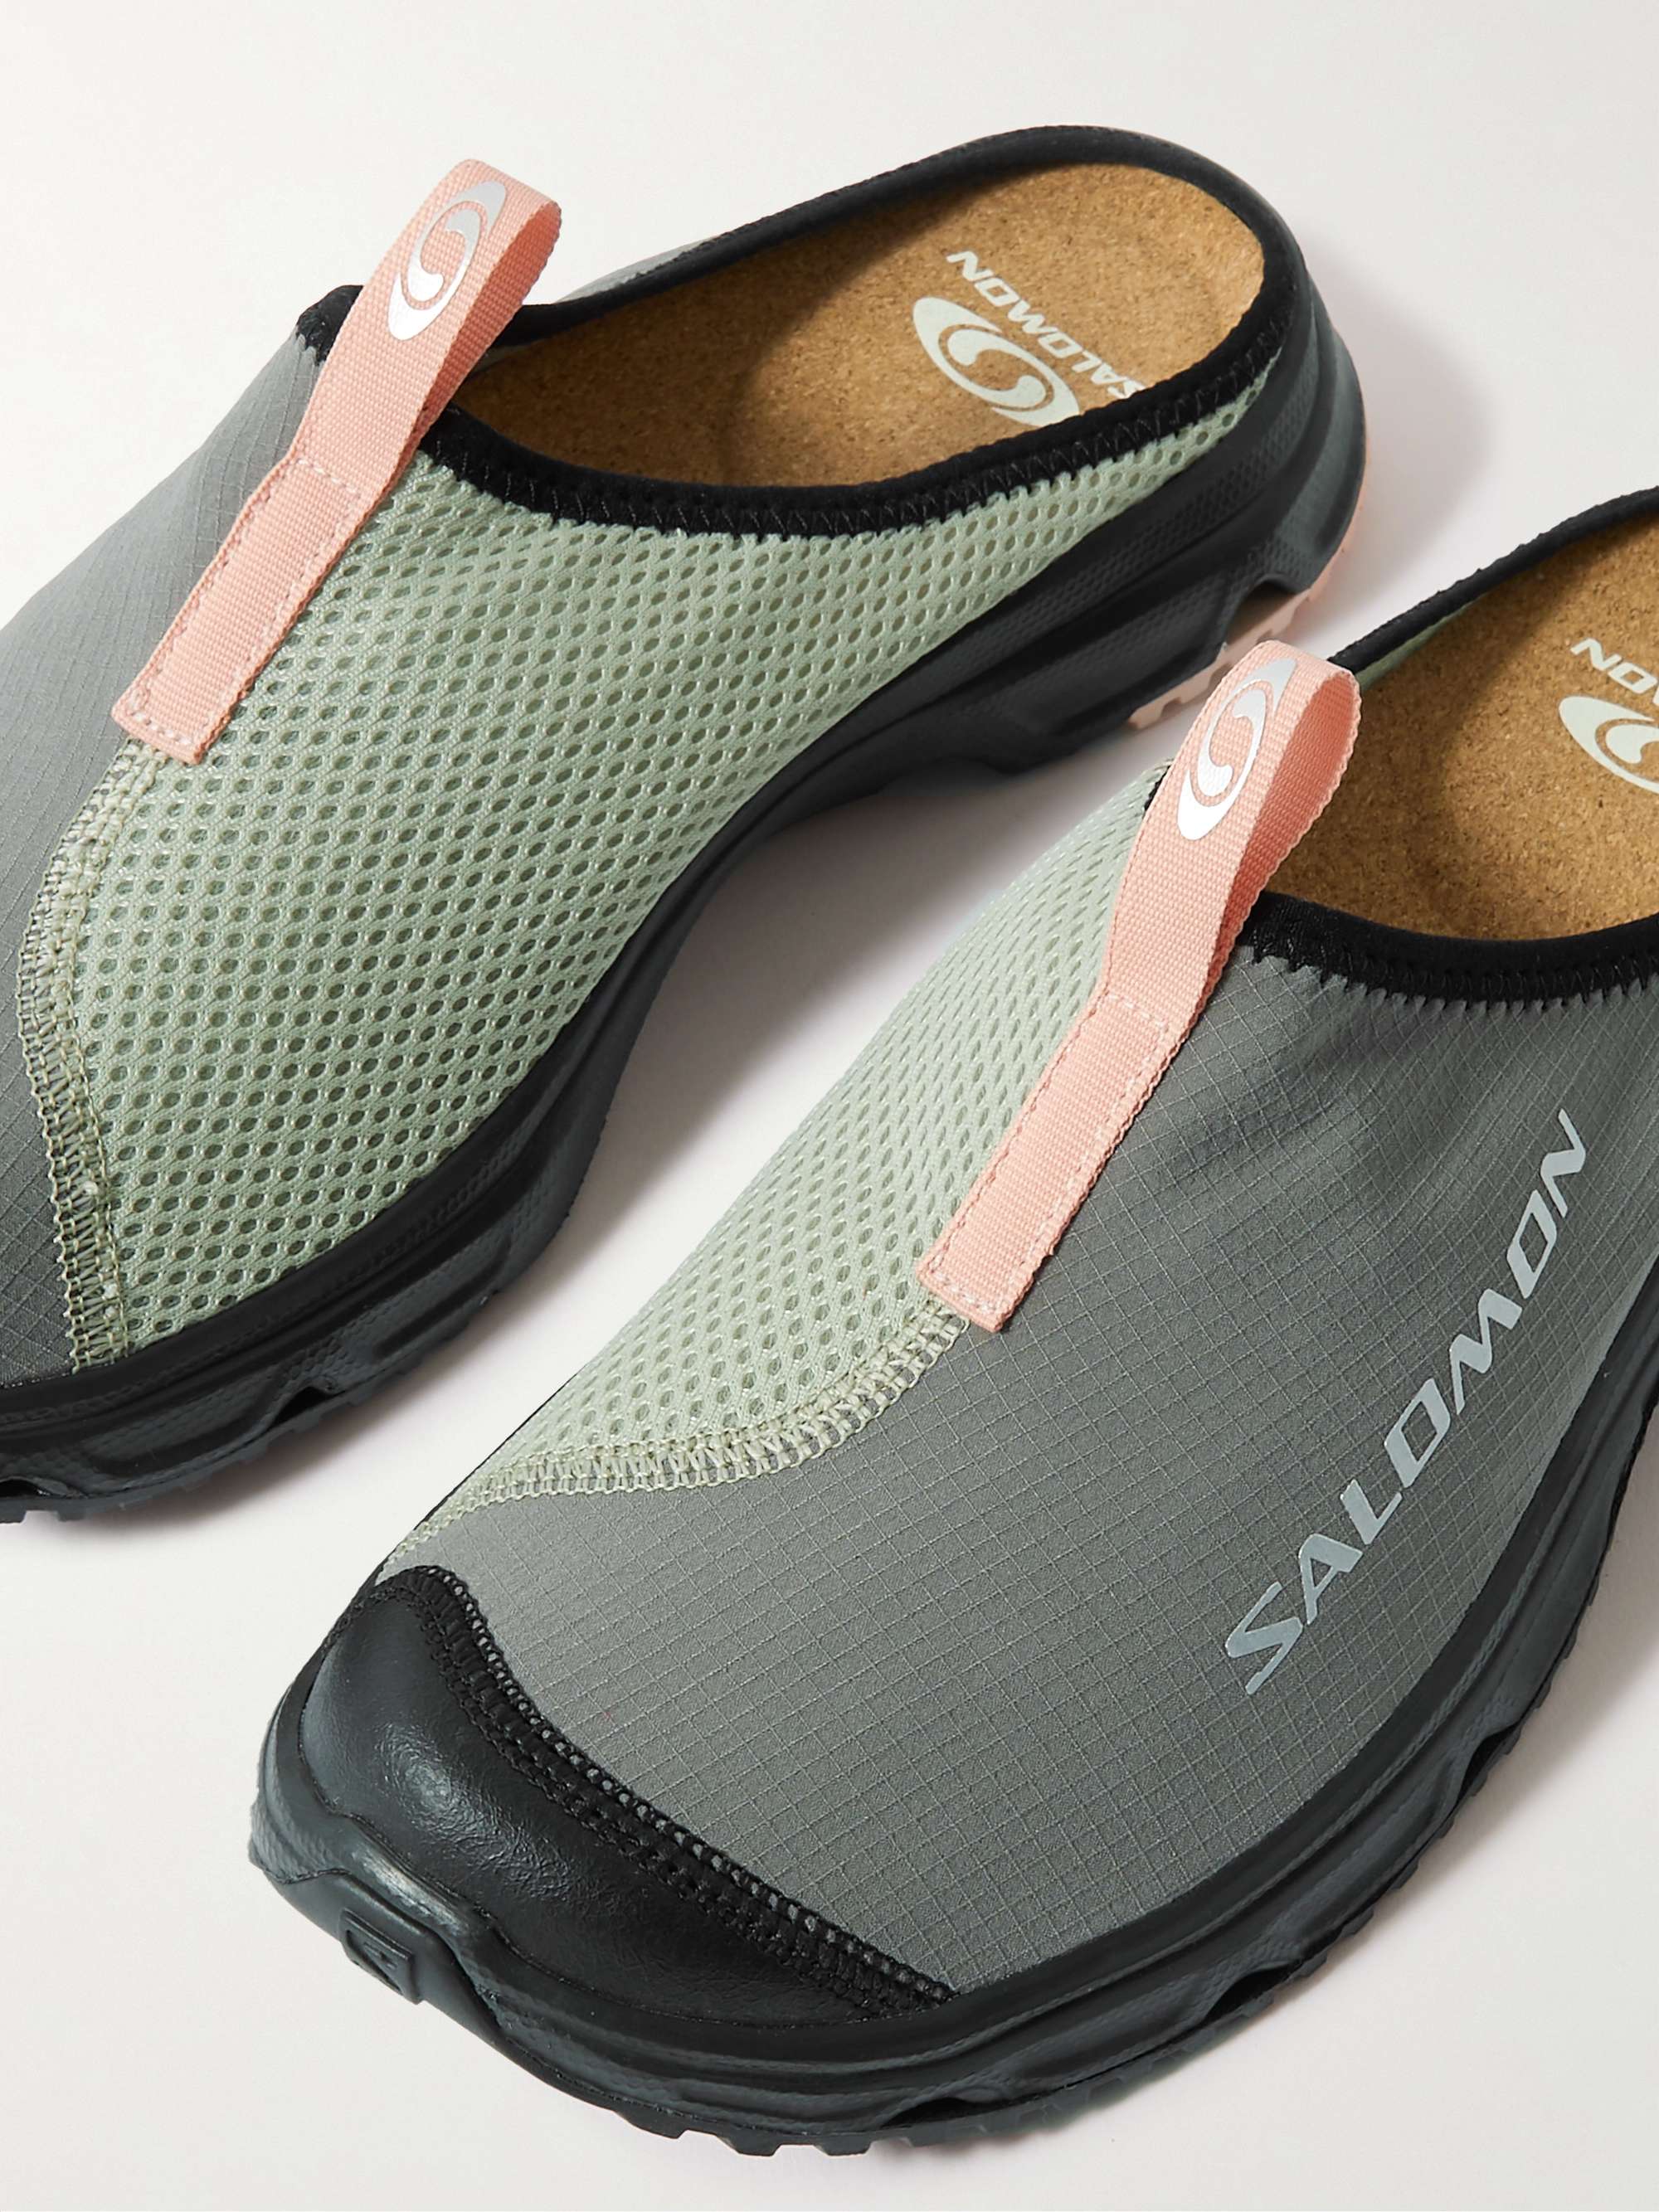 SALOMON RX Slide 3.0 Mesh Slip-On Sneakers | MR PORTER